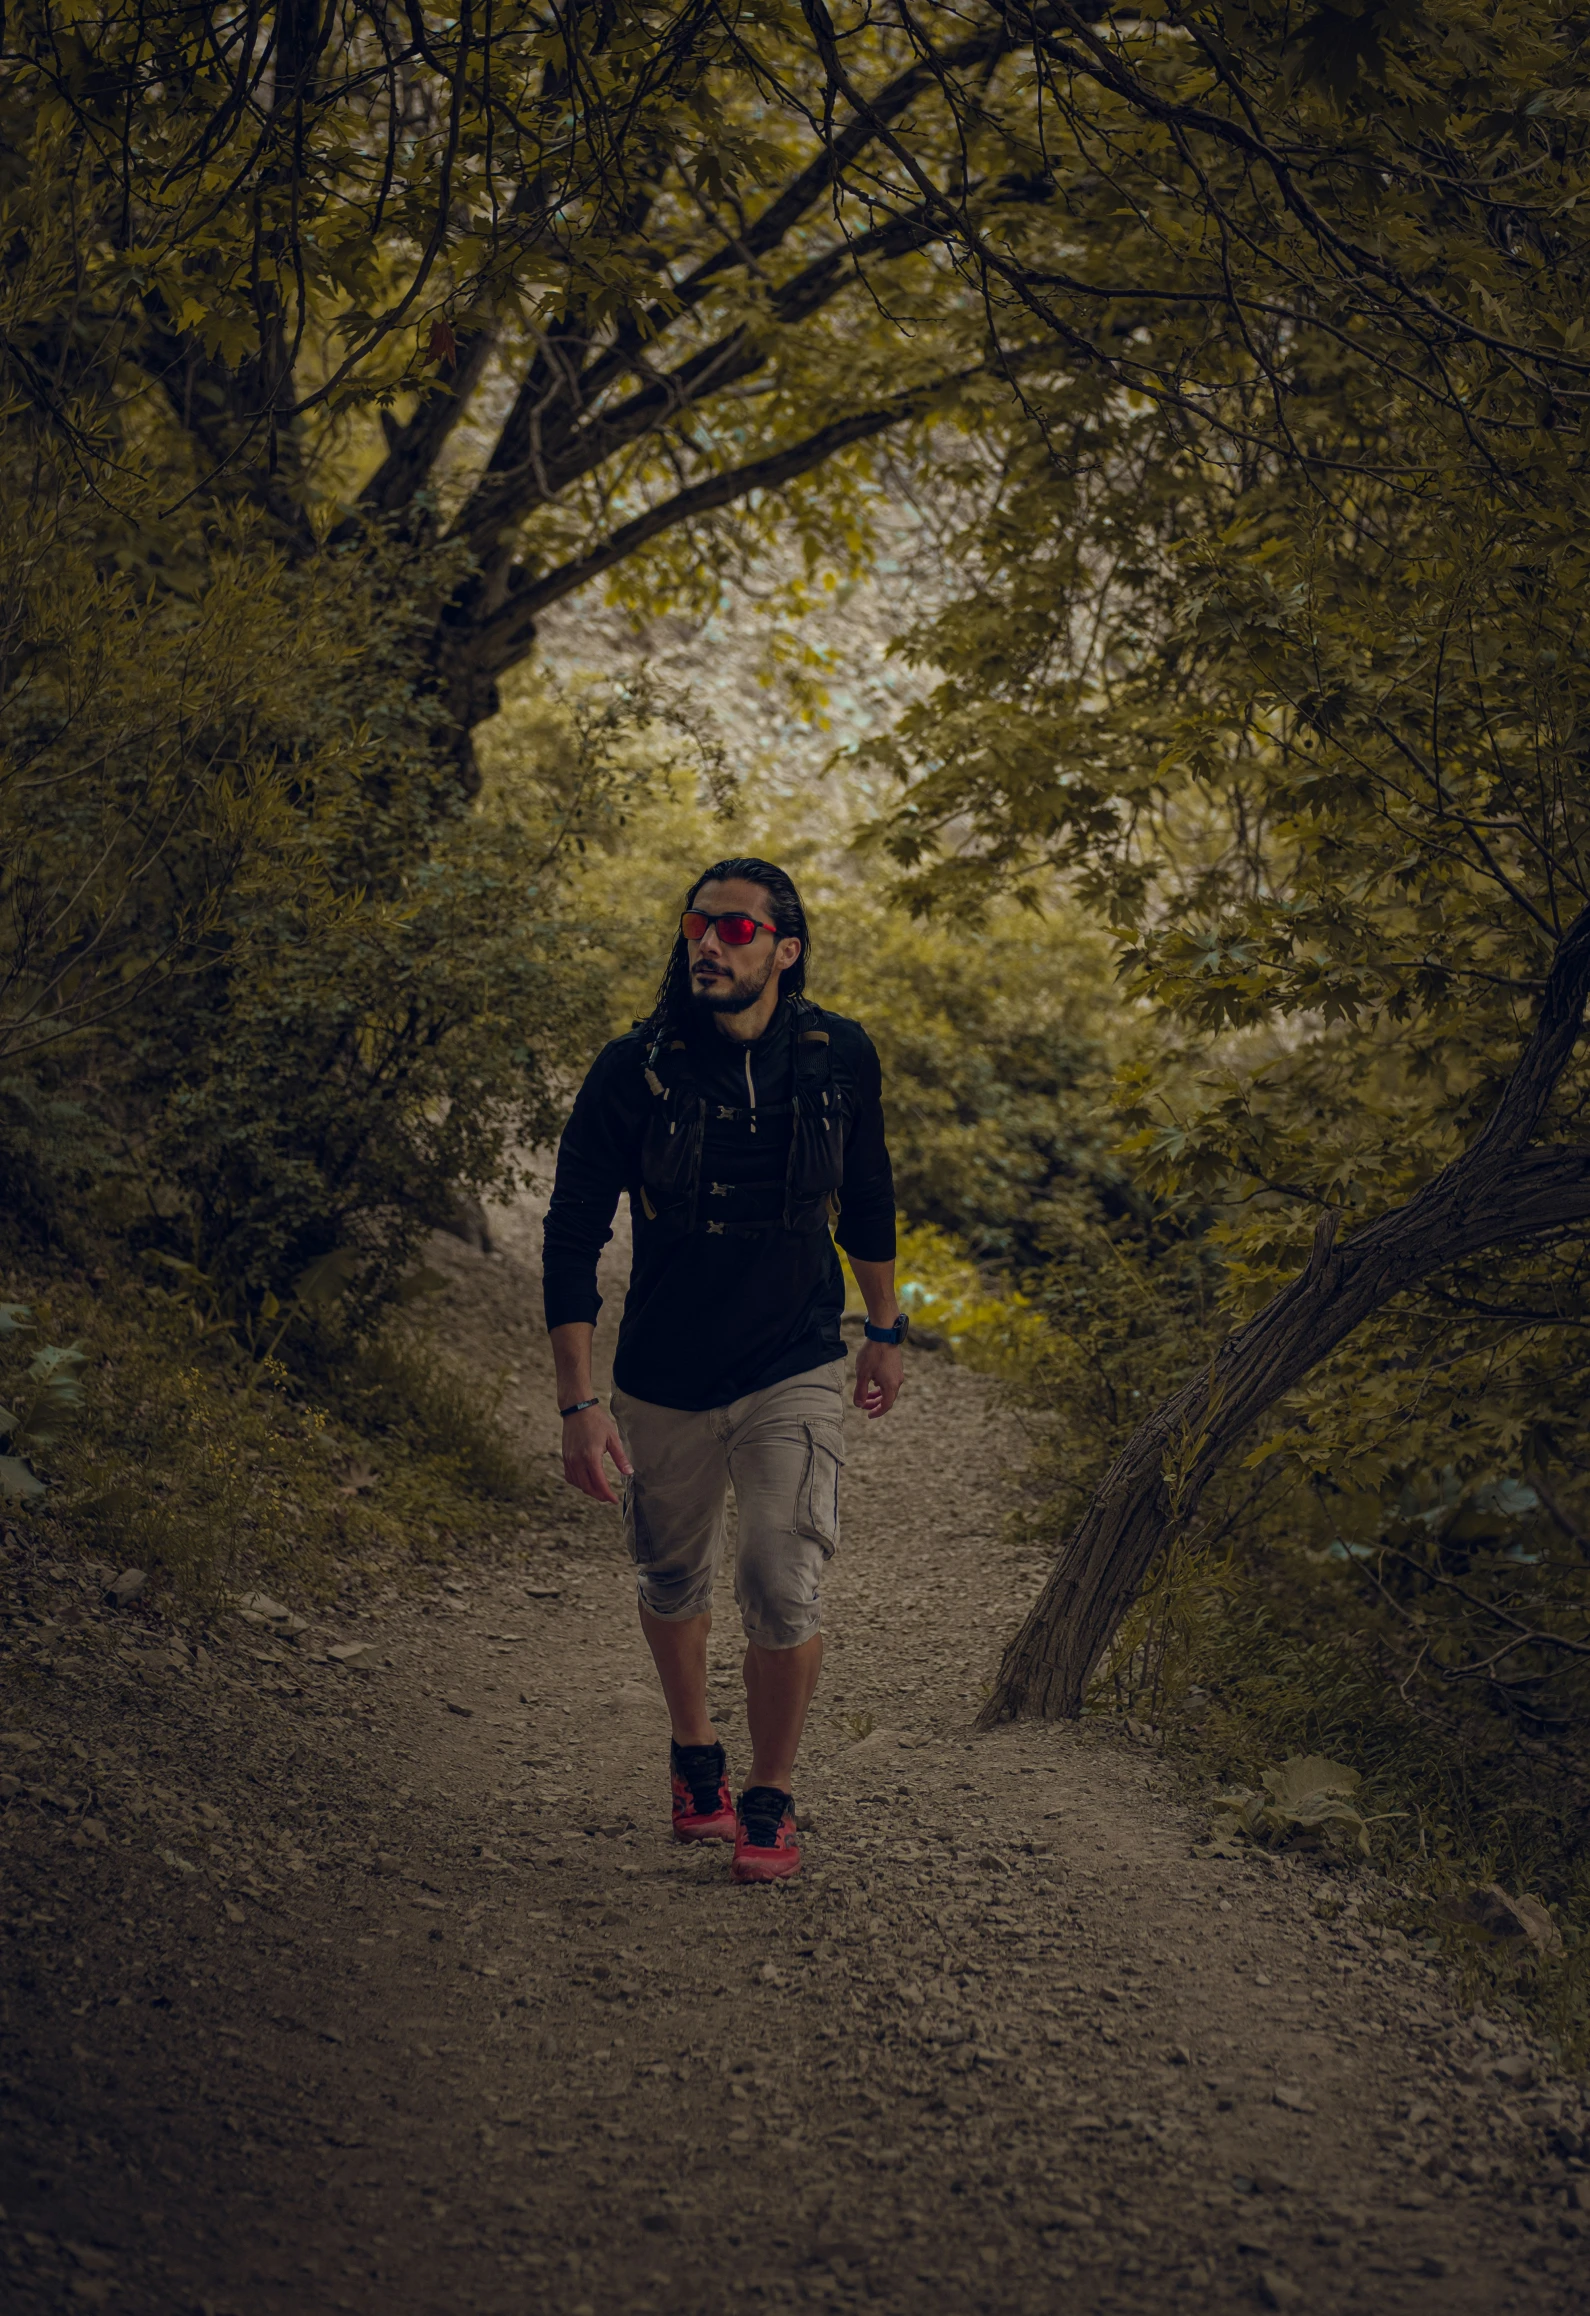 a man in shades walks through a wooded path